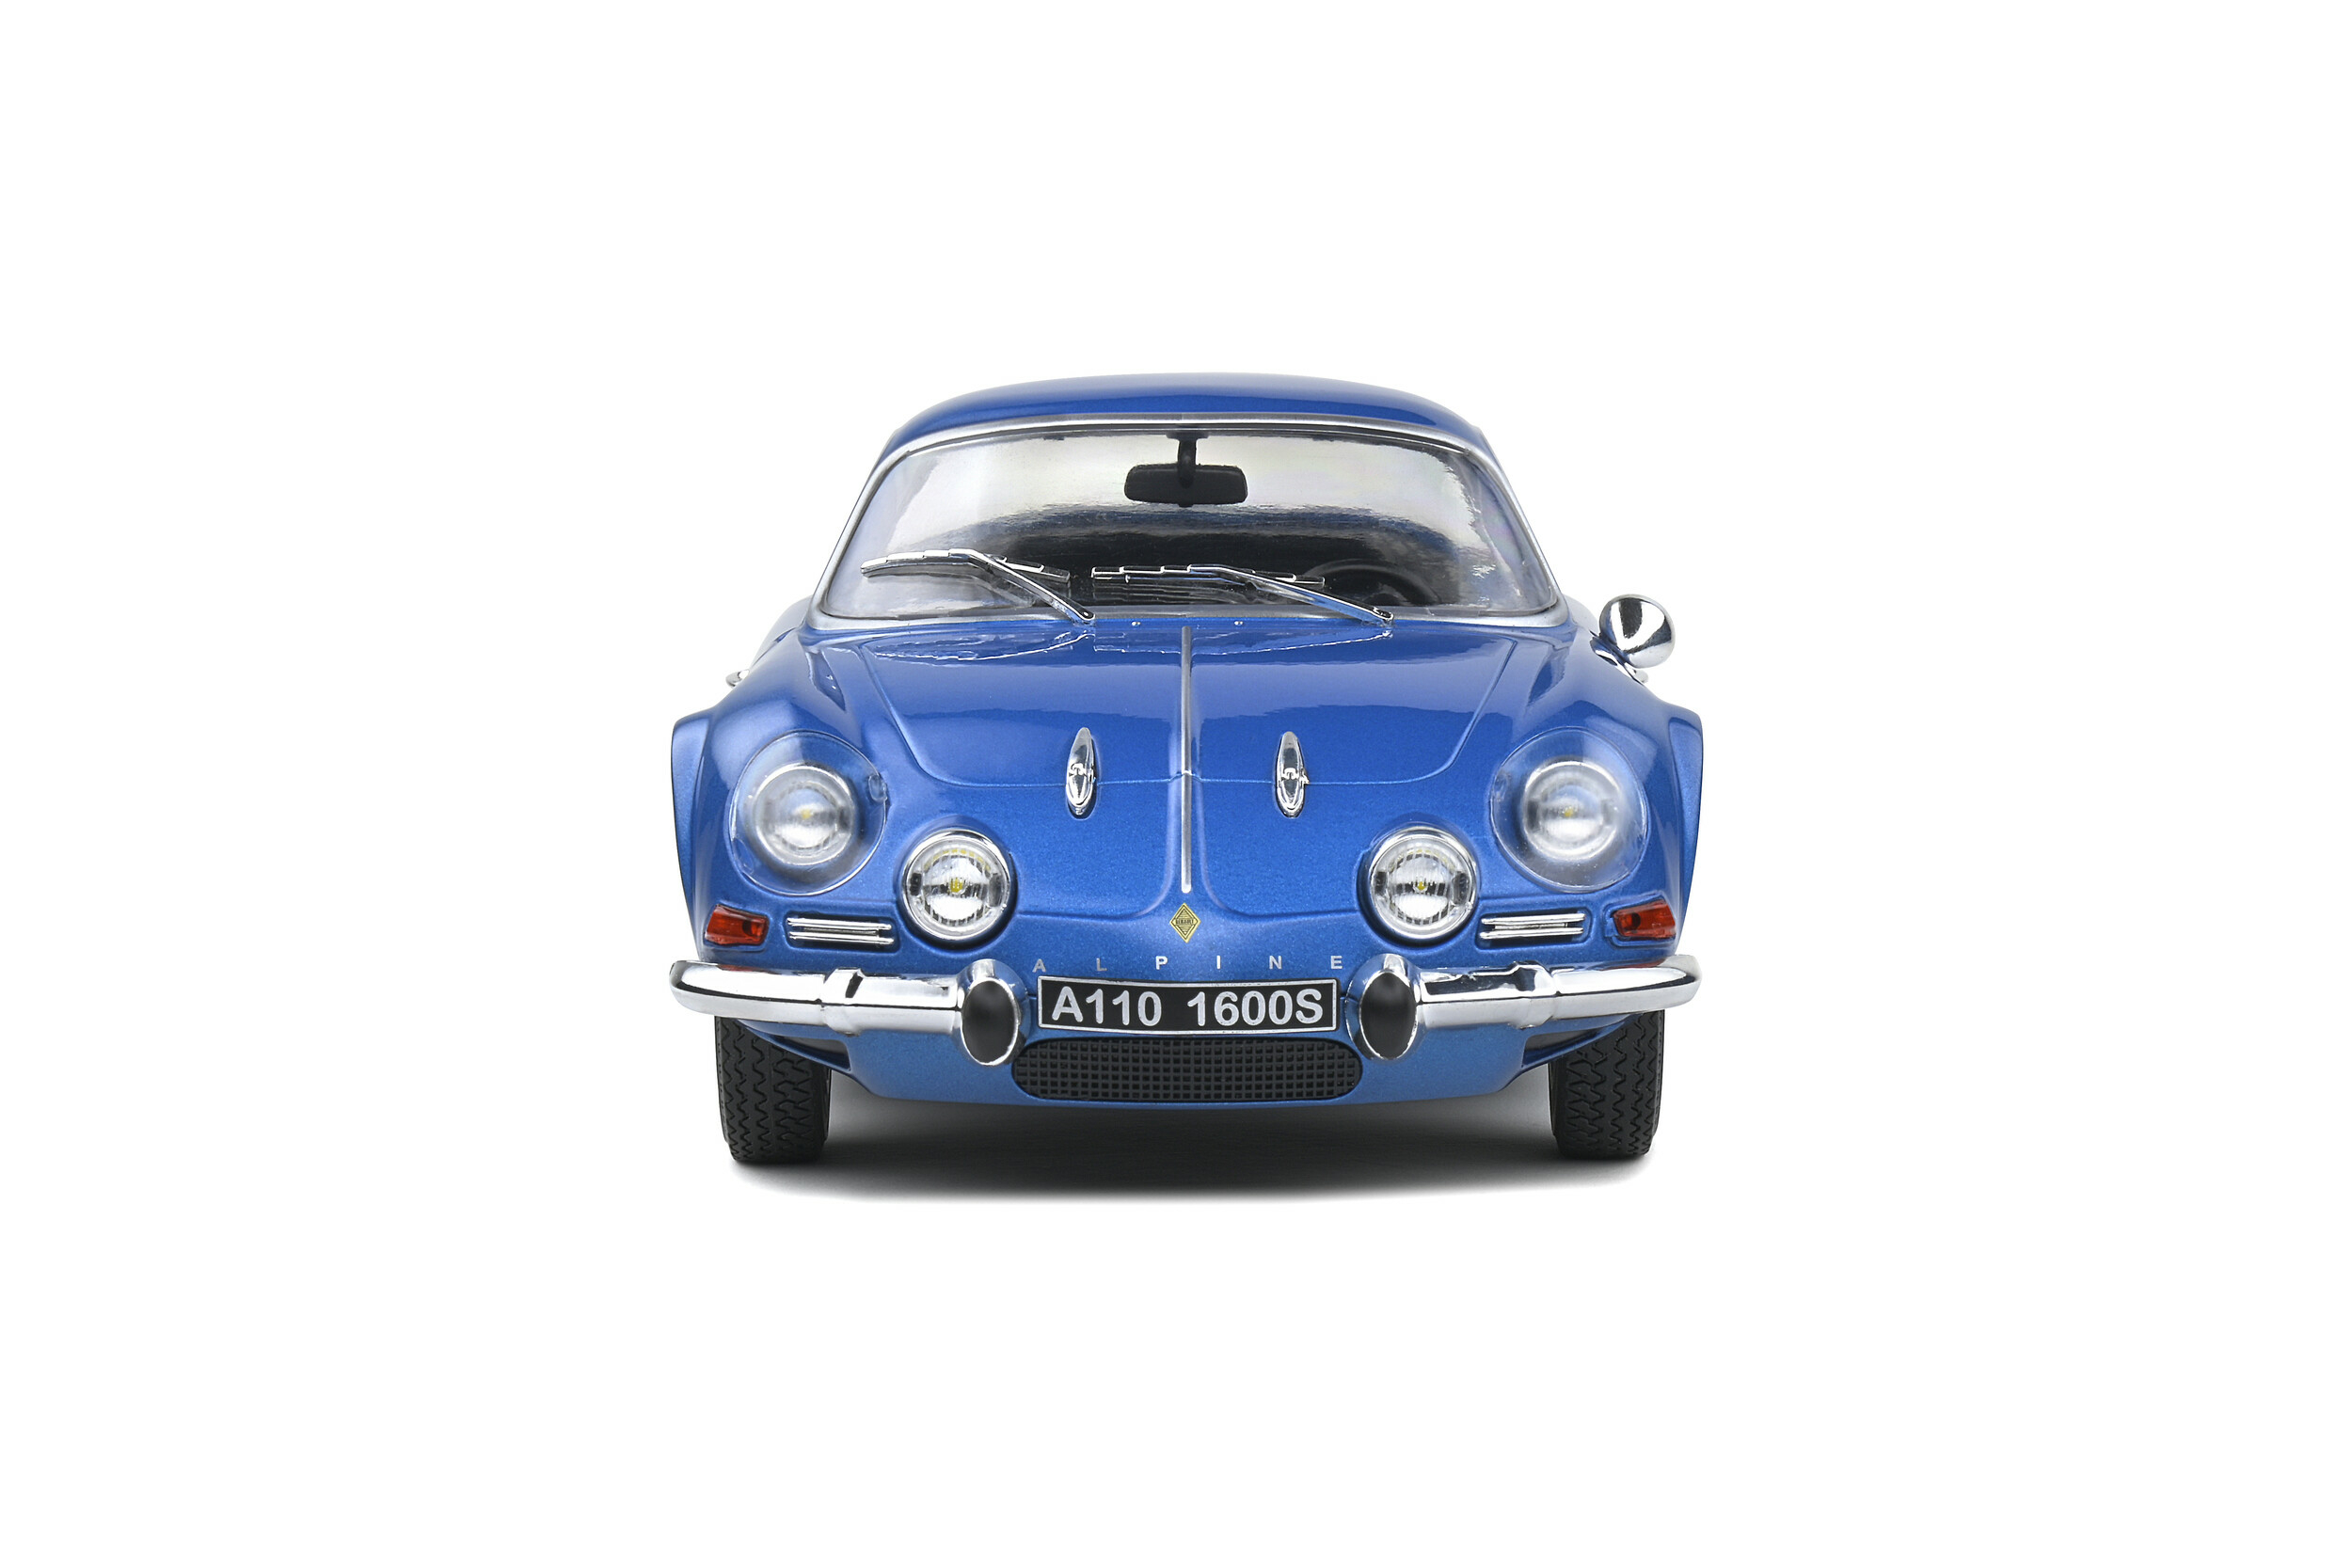 ALPINE A110 1600S de lannée 1969 échelle 1 18 couleur bleu alpine collection Solido vue face